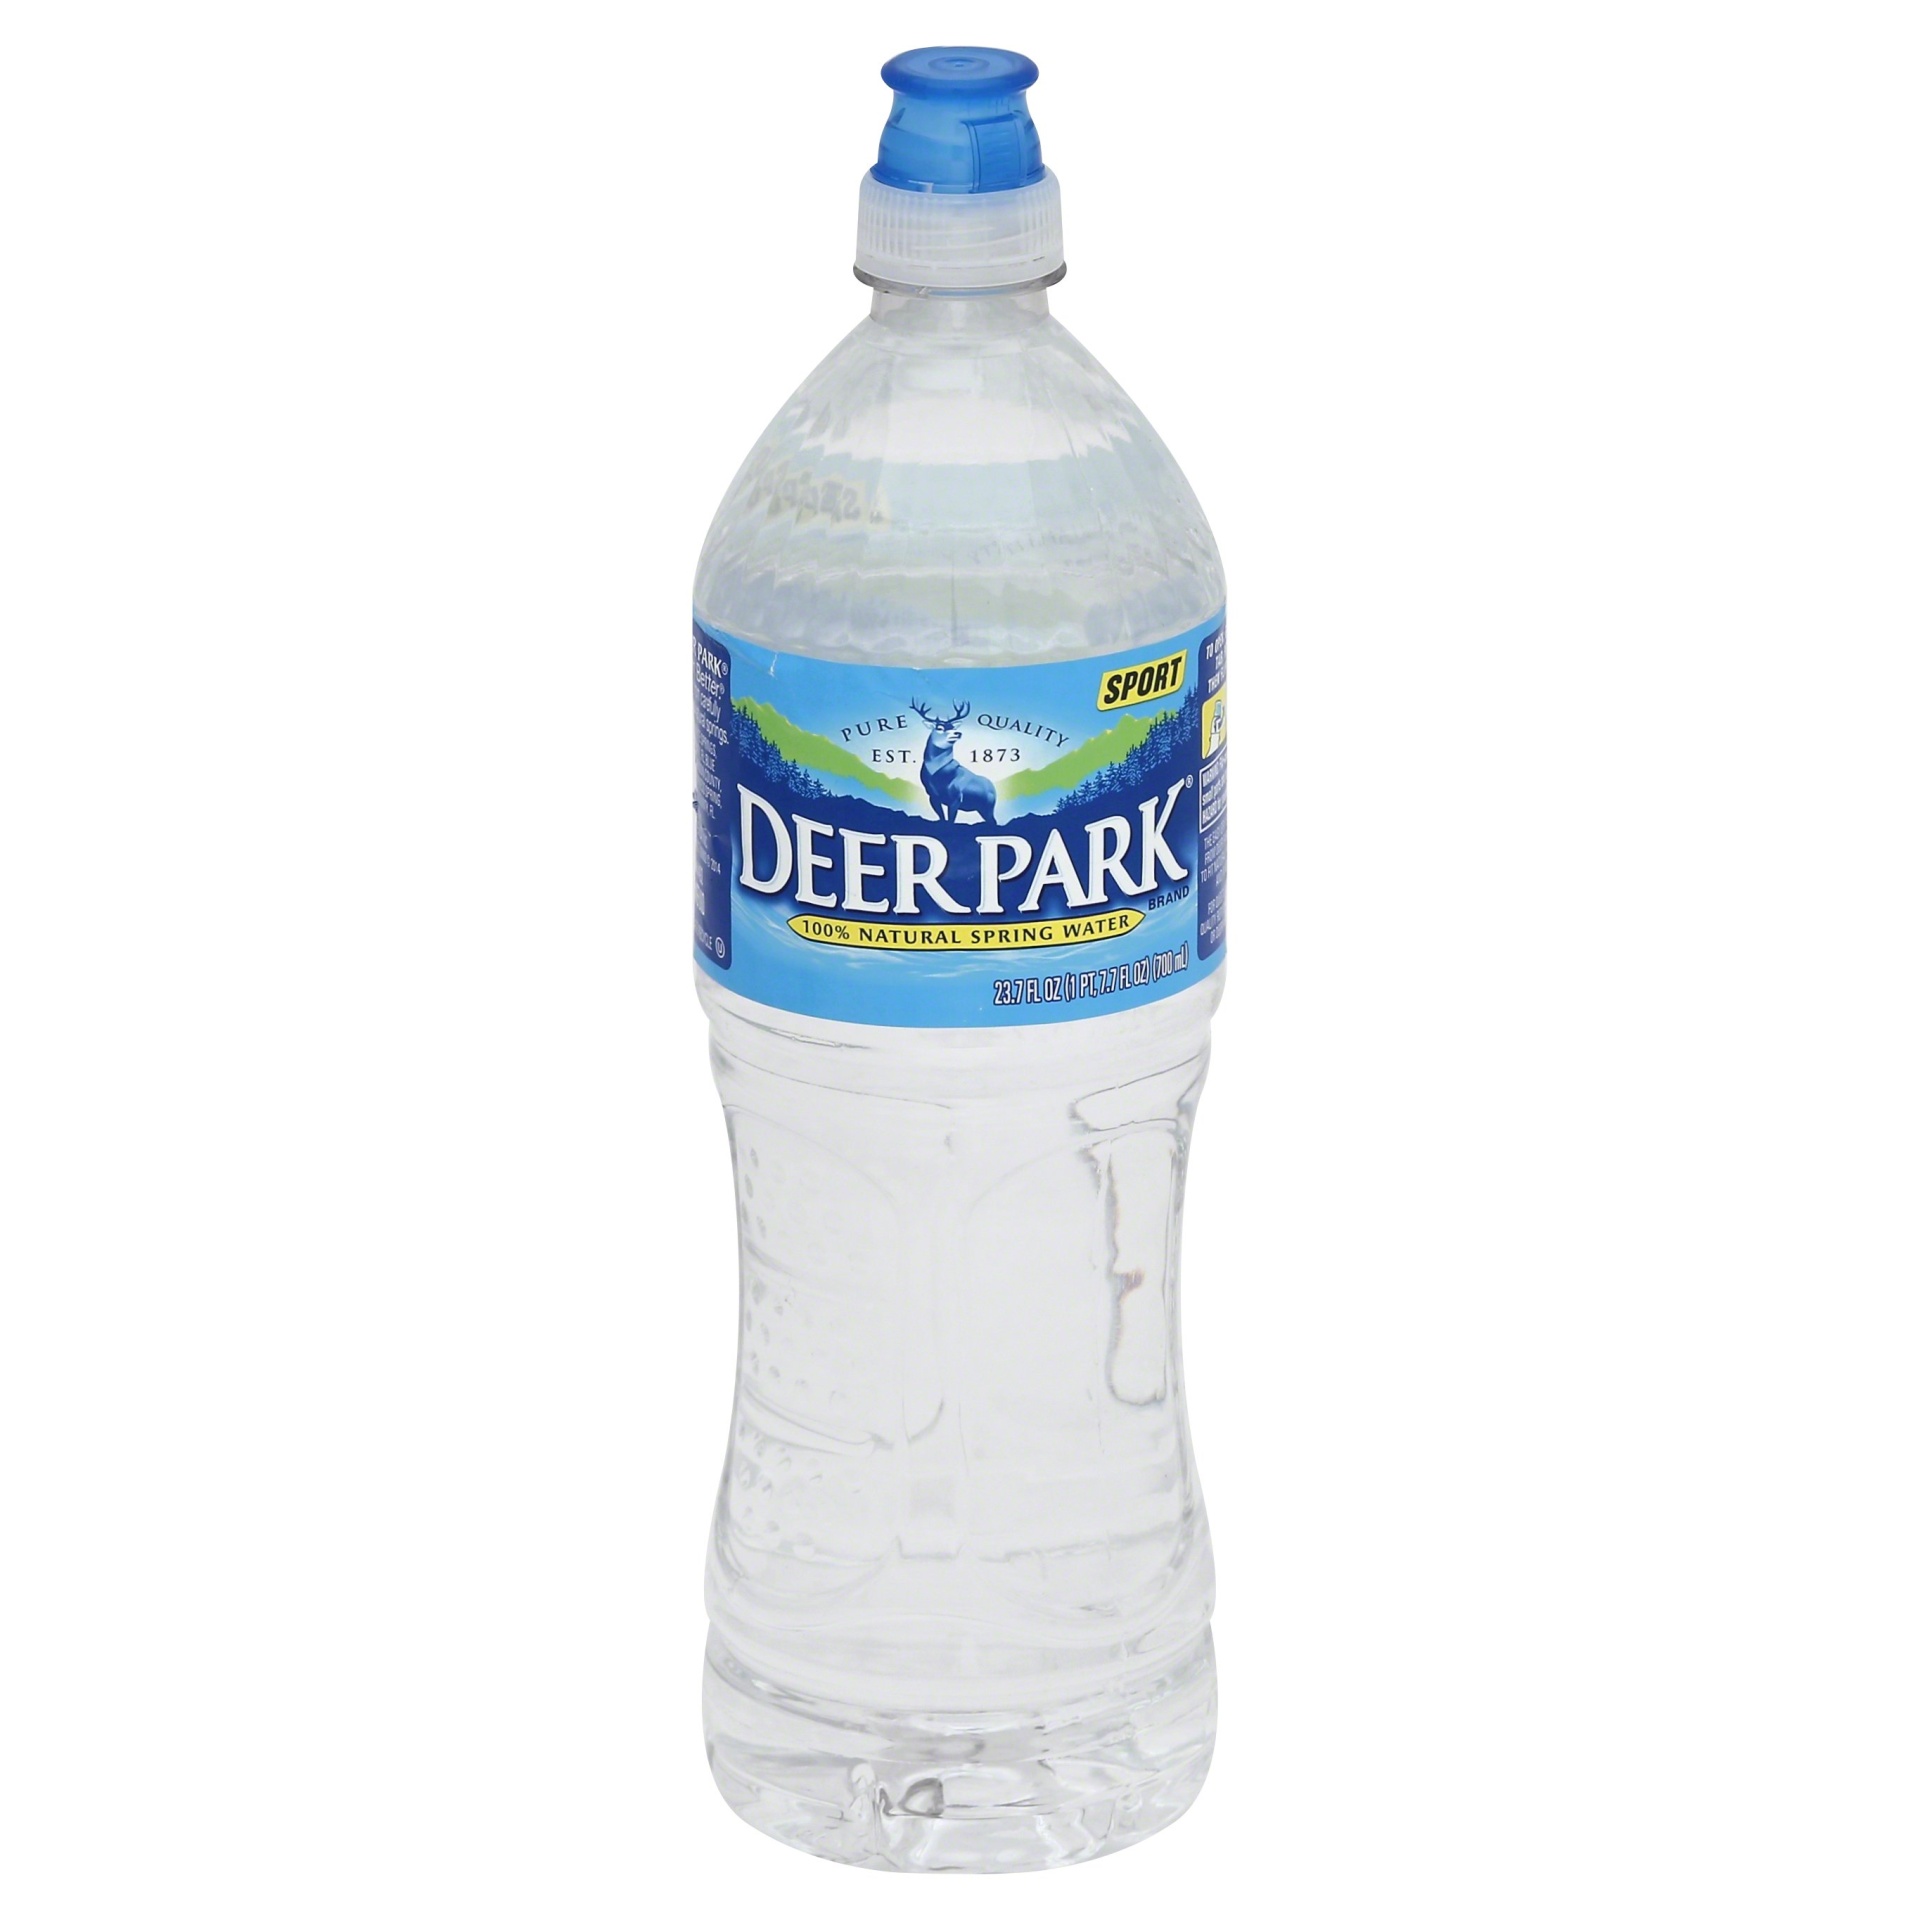 slide 1 of 3, Deer Park 100% Natural Spring Water Plastic Bottle, 23.7 Oz, 23.7 oz